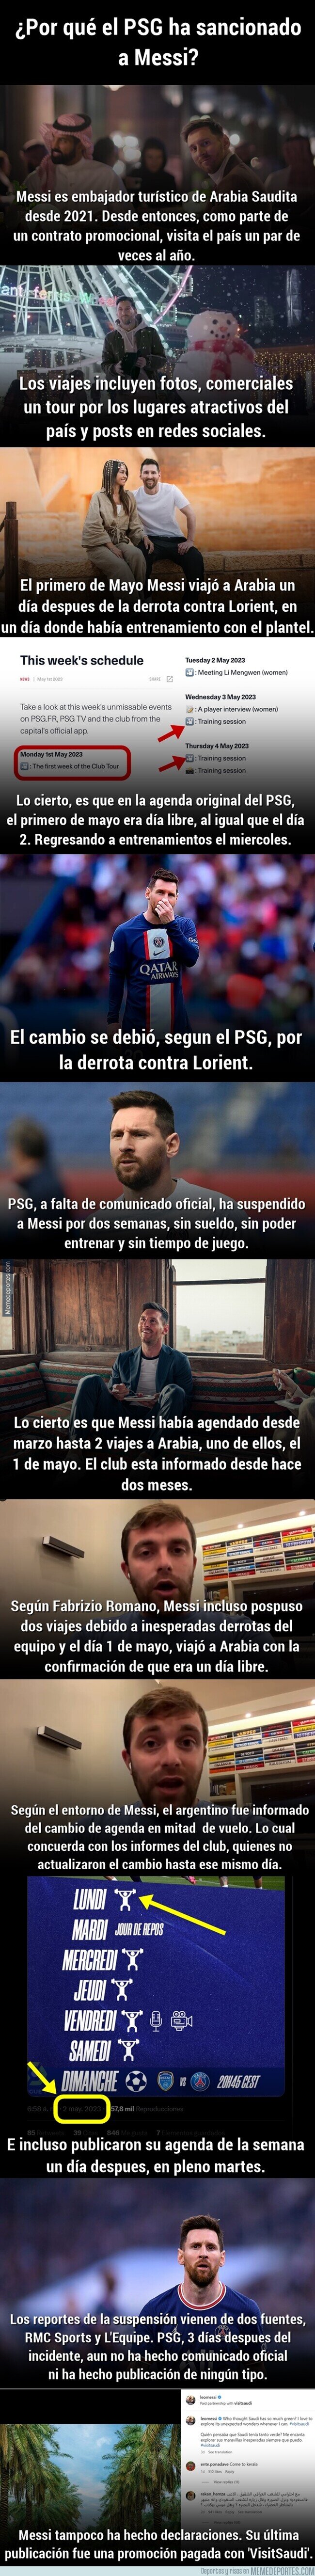 1187259 - Todo lo que hay que saber del caso Messi-PSG